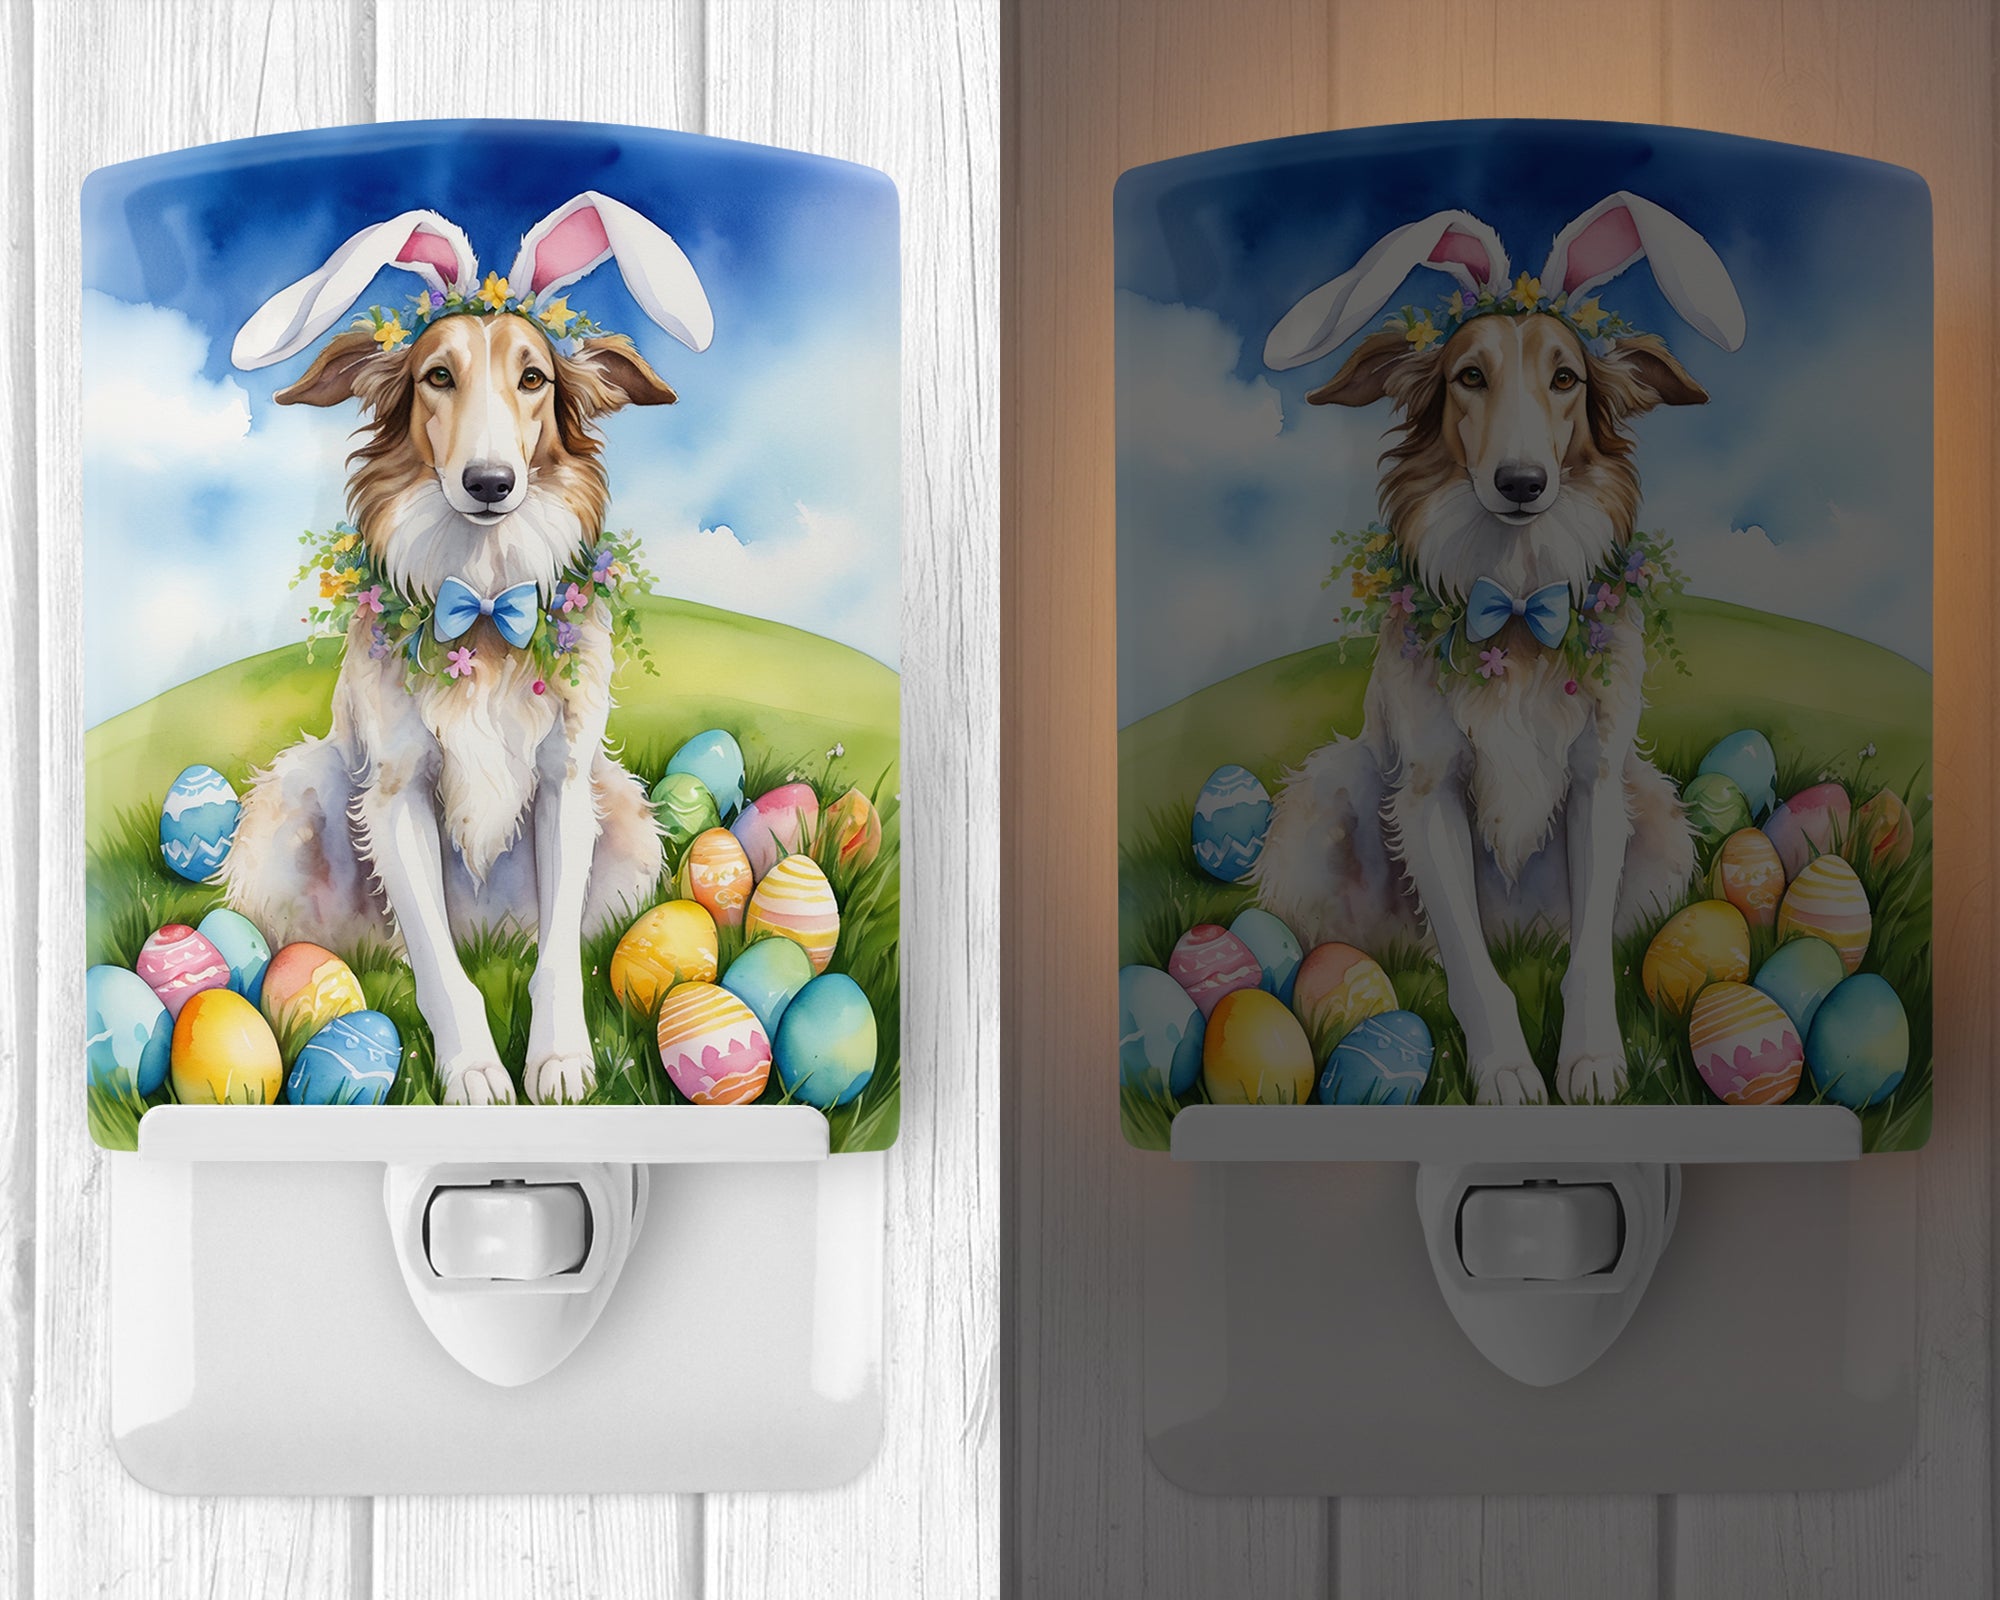 Buy this Borzoi Easter Egg Hunt Ceramic Night Light